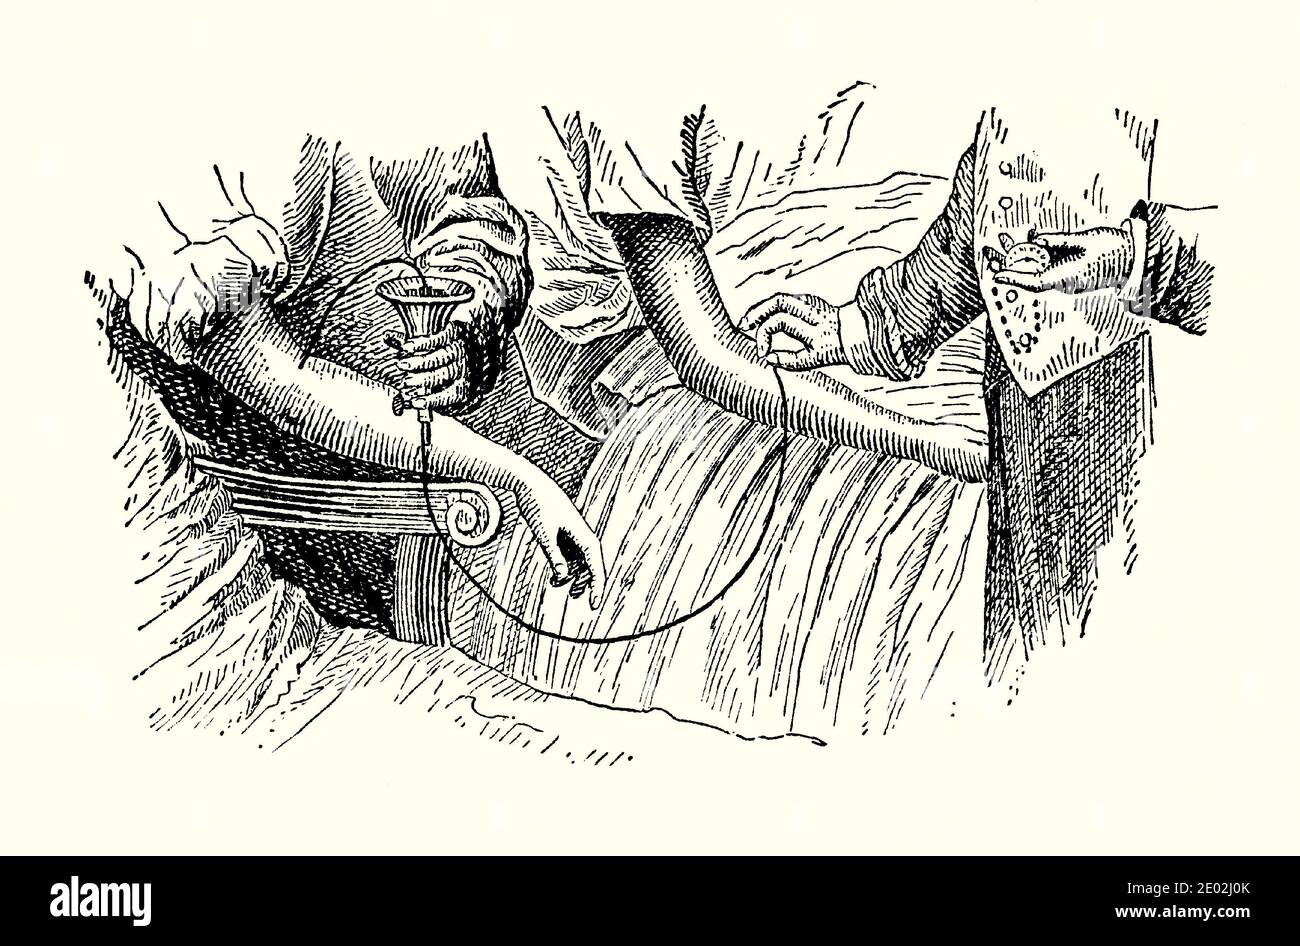 Un viejo grabado de aparatos de transfusión de sangre victorianos. Es de un libro de ingeniería mecánica de la década de 1880. Este dispositivo francés recoge la sangre del donante en una taza (izquierda). La sangre es forzada a través de una cánula en la vena del paciente (derecha). La transfusión de sangre es el proceso de transferir sangre o productos sanguíneos a la circulación de uno por vía intravenosa. Las transfusiones se utilizan para varias afecciones médicas para reemplazar los componentes perdidos de la sangre. Las primeras transfusiones usaron sangre completa, pero hoy en día la práctica médica usa comúnmente solo los componentes de la sangre. Foto de stock